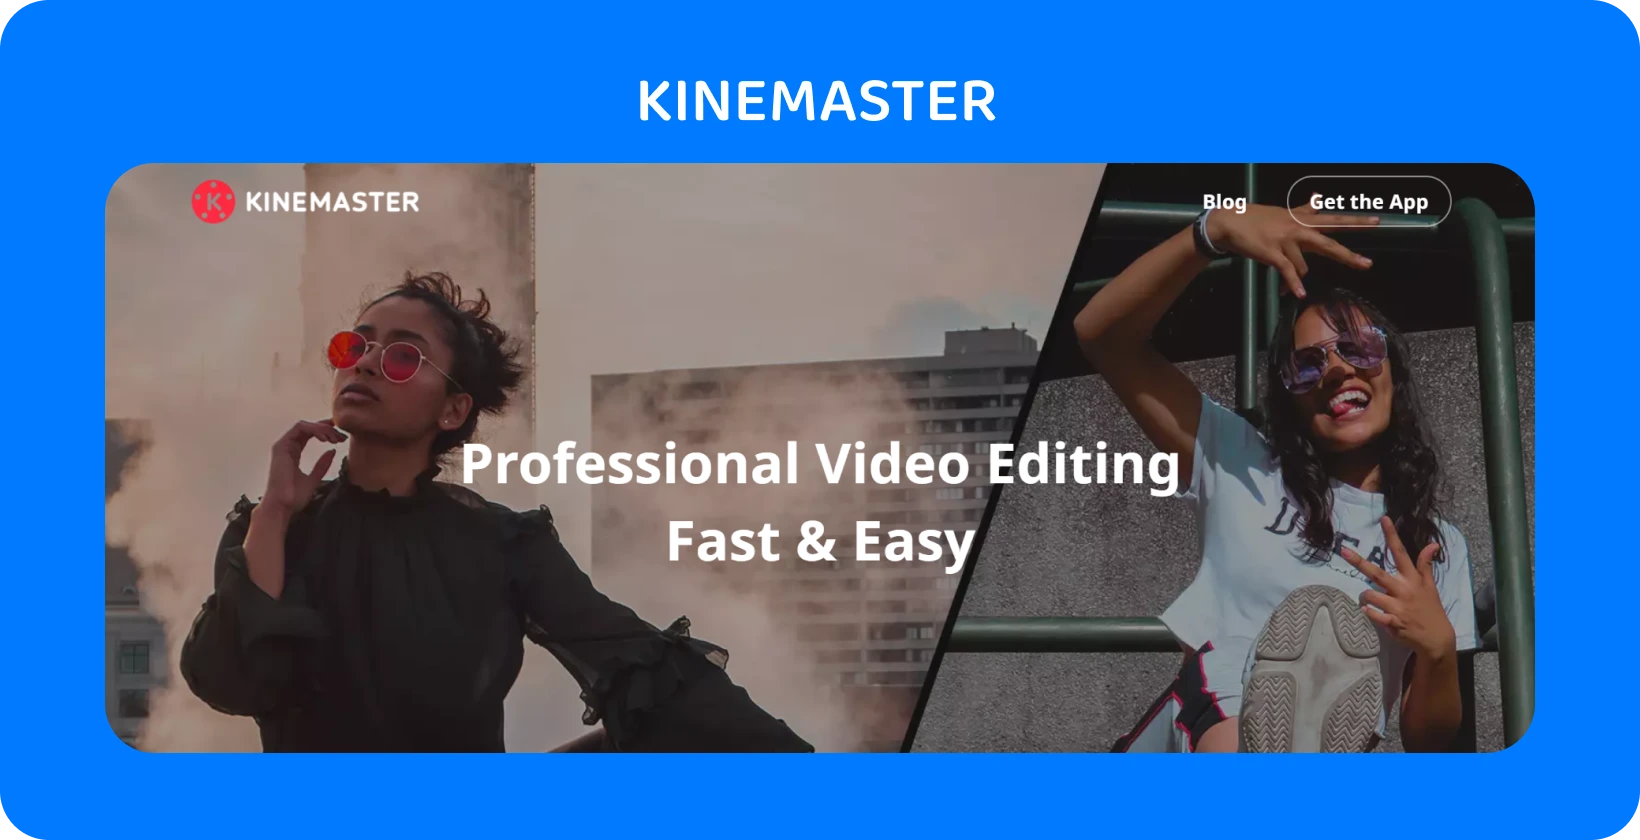 Anuncio de la aplicación KineMaster con dos modelos posando, destacando la edición de video profesional que es rápida y fácil.